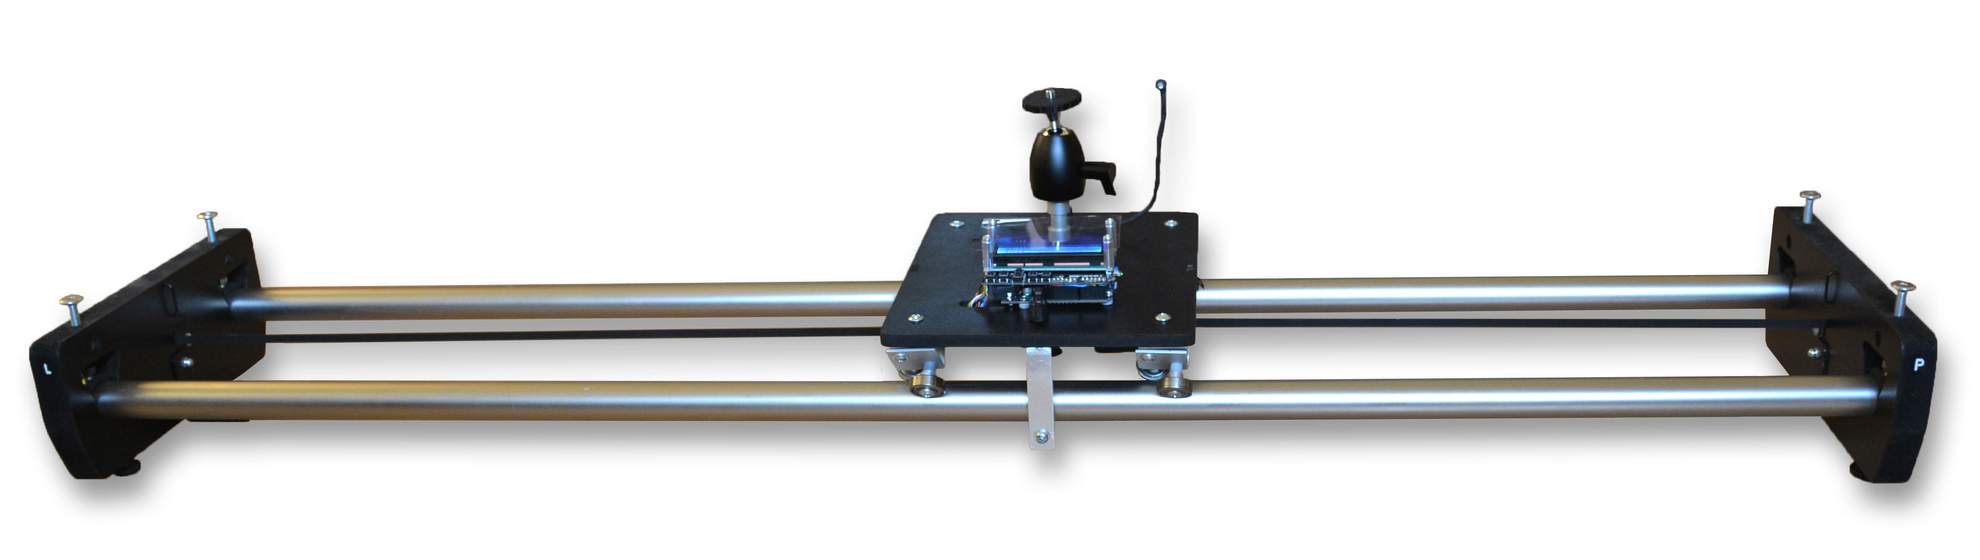 Motorized TimeLapse slider & dolly & rail, časozberné video a fotografia, DIY project based on Arduino